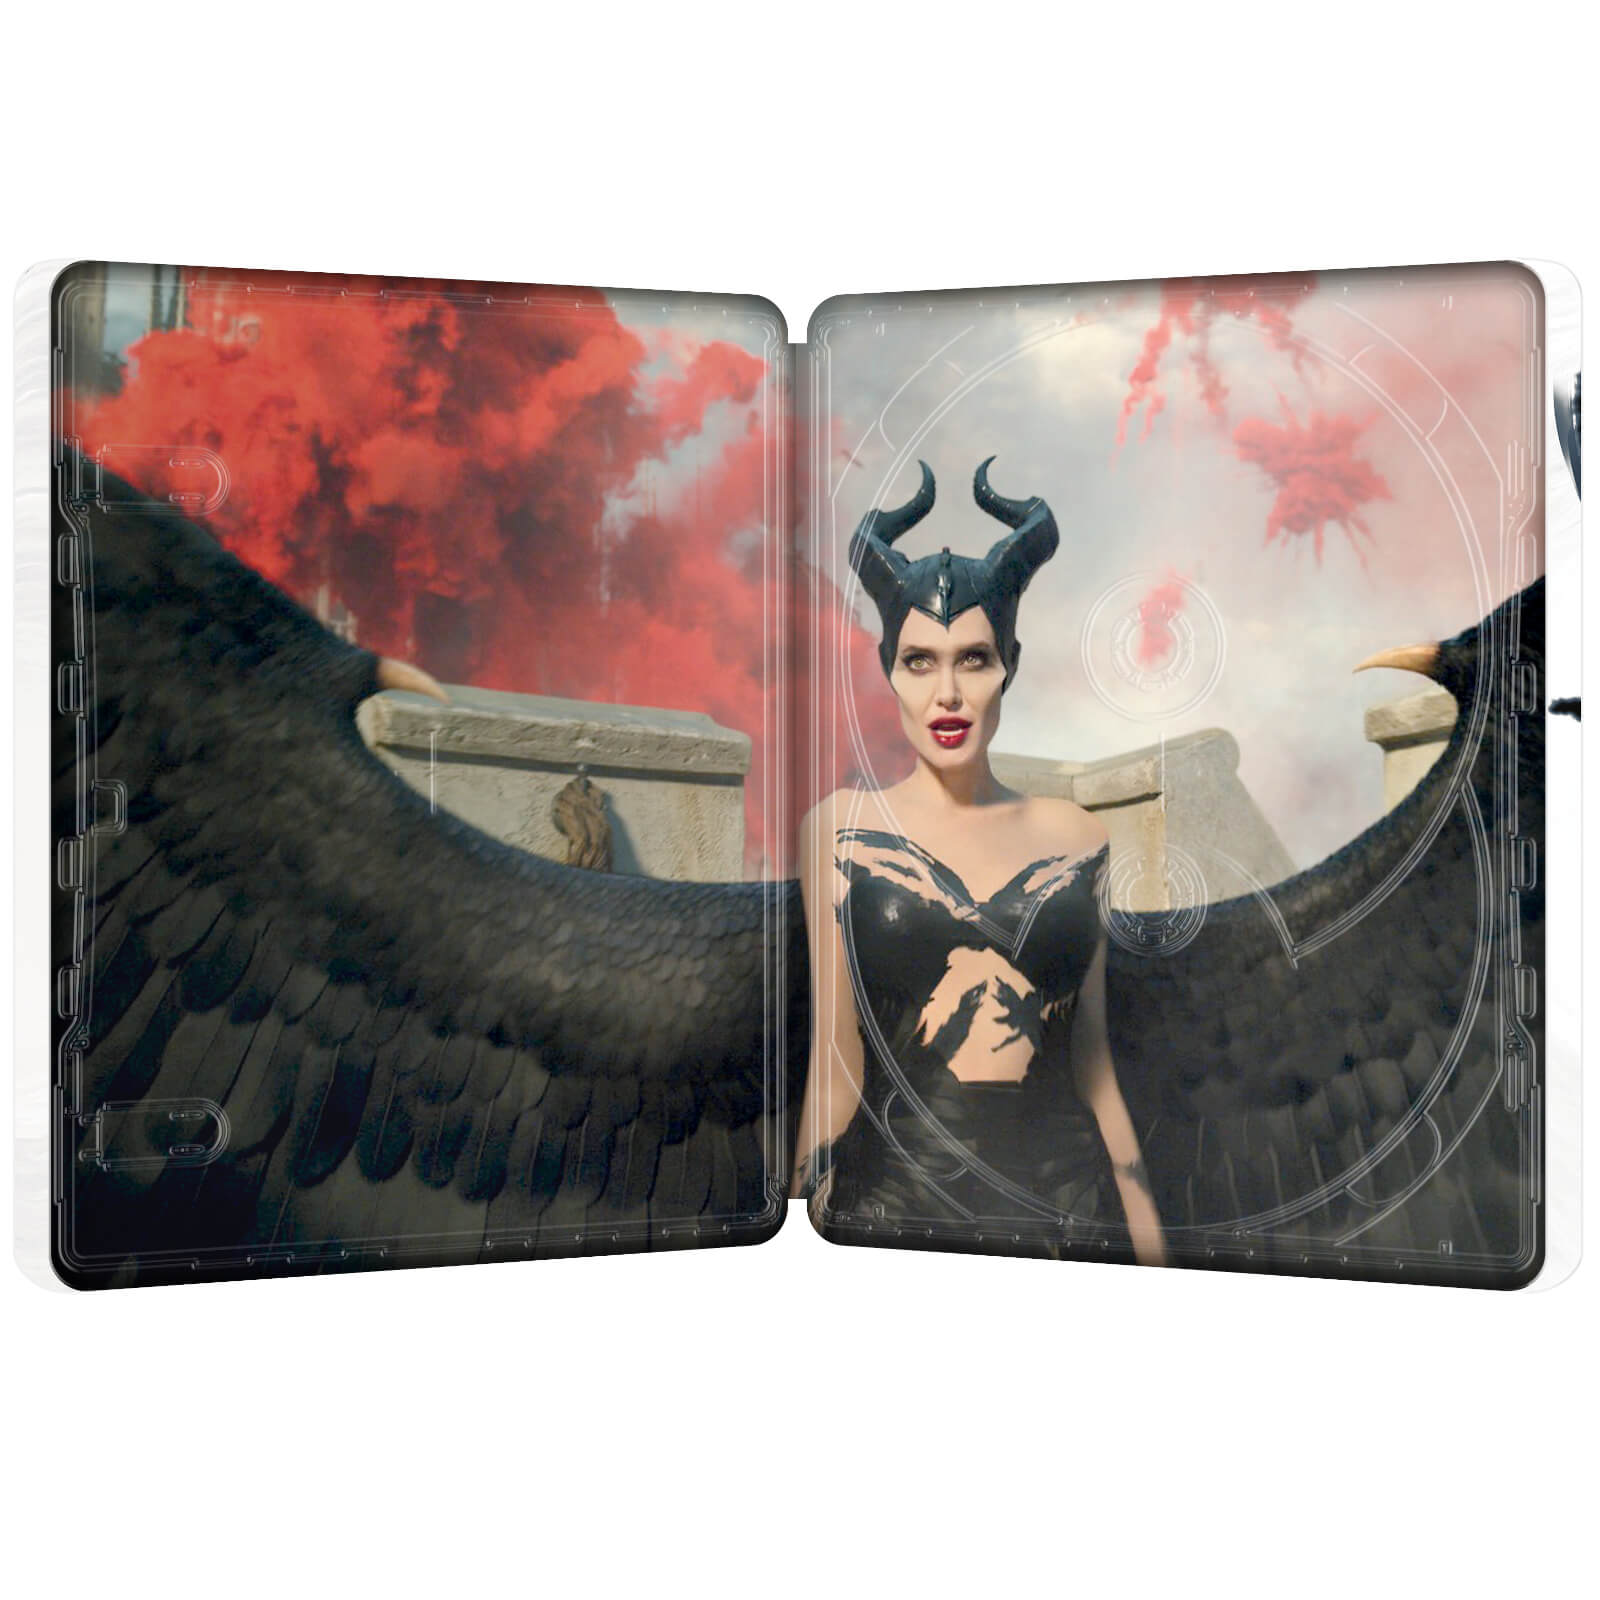 Maleficent: Mistress of Evil - Zavvi Exclusive 4K Ultra HD Steelbook